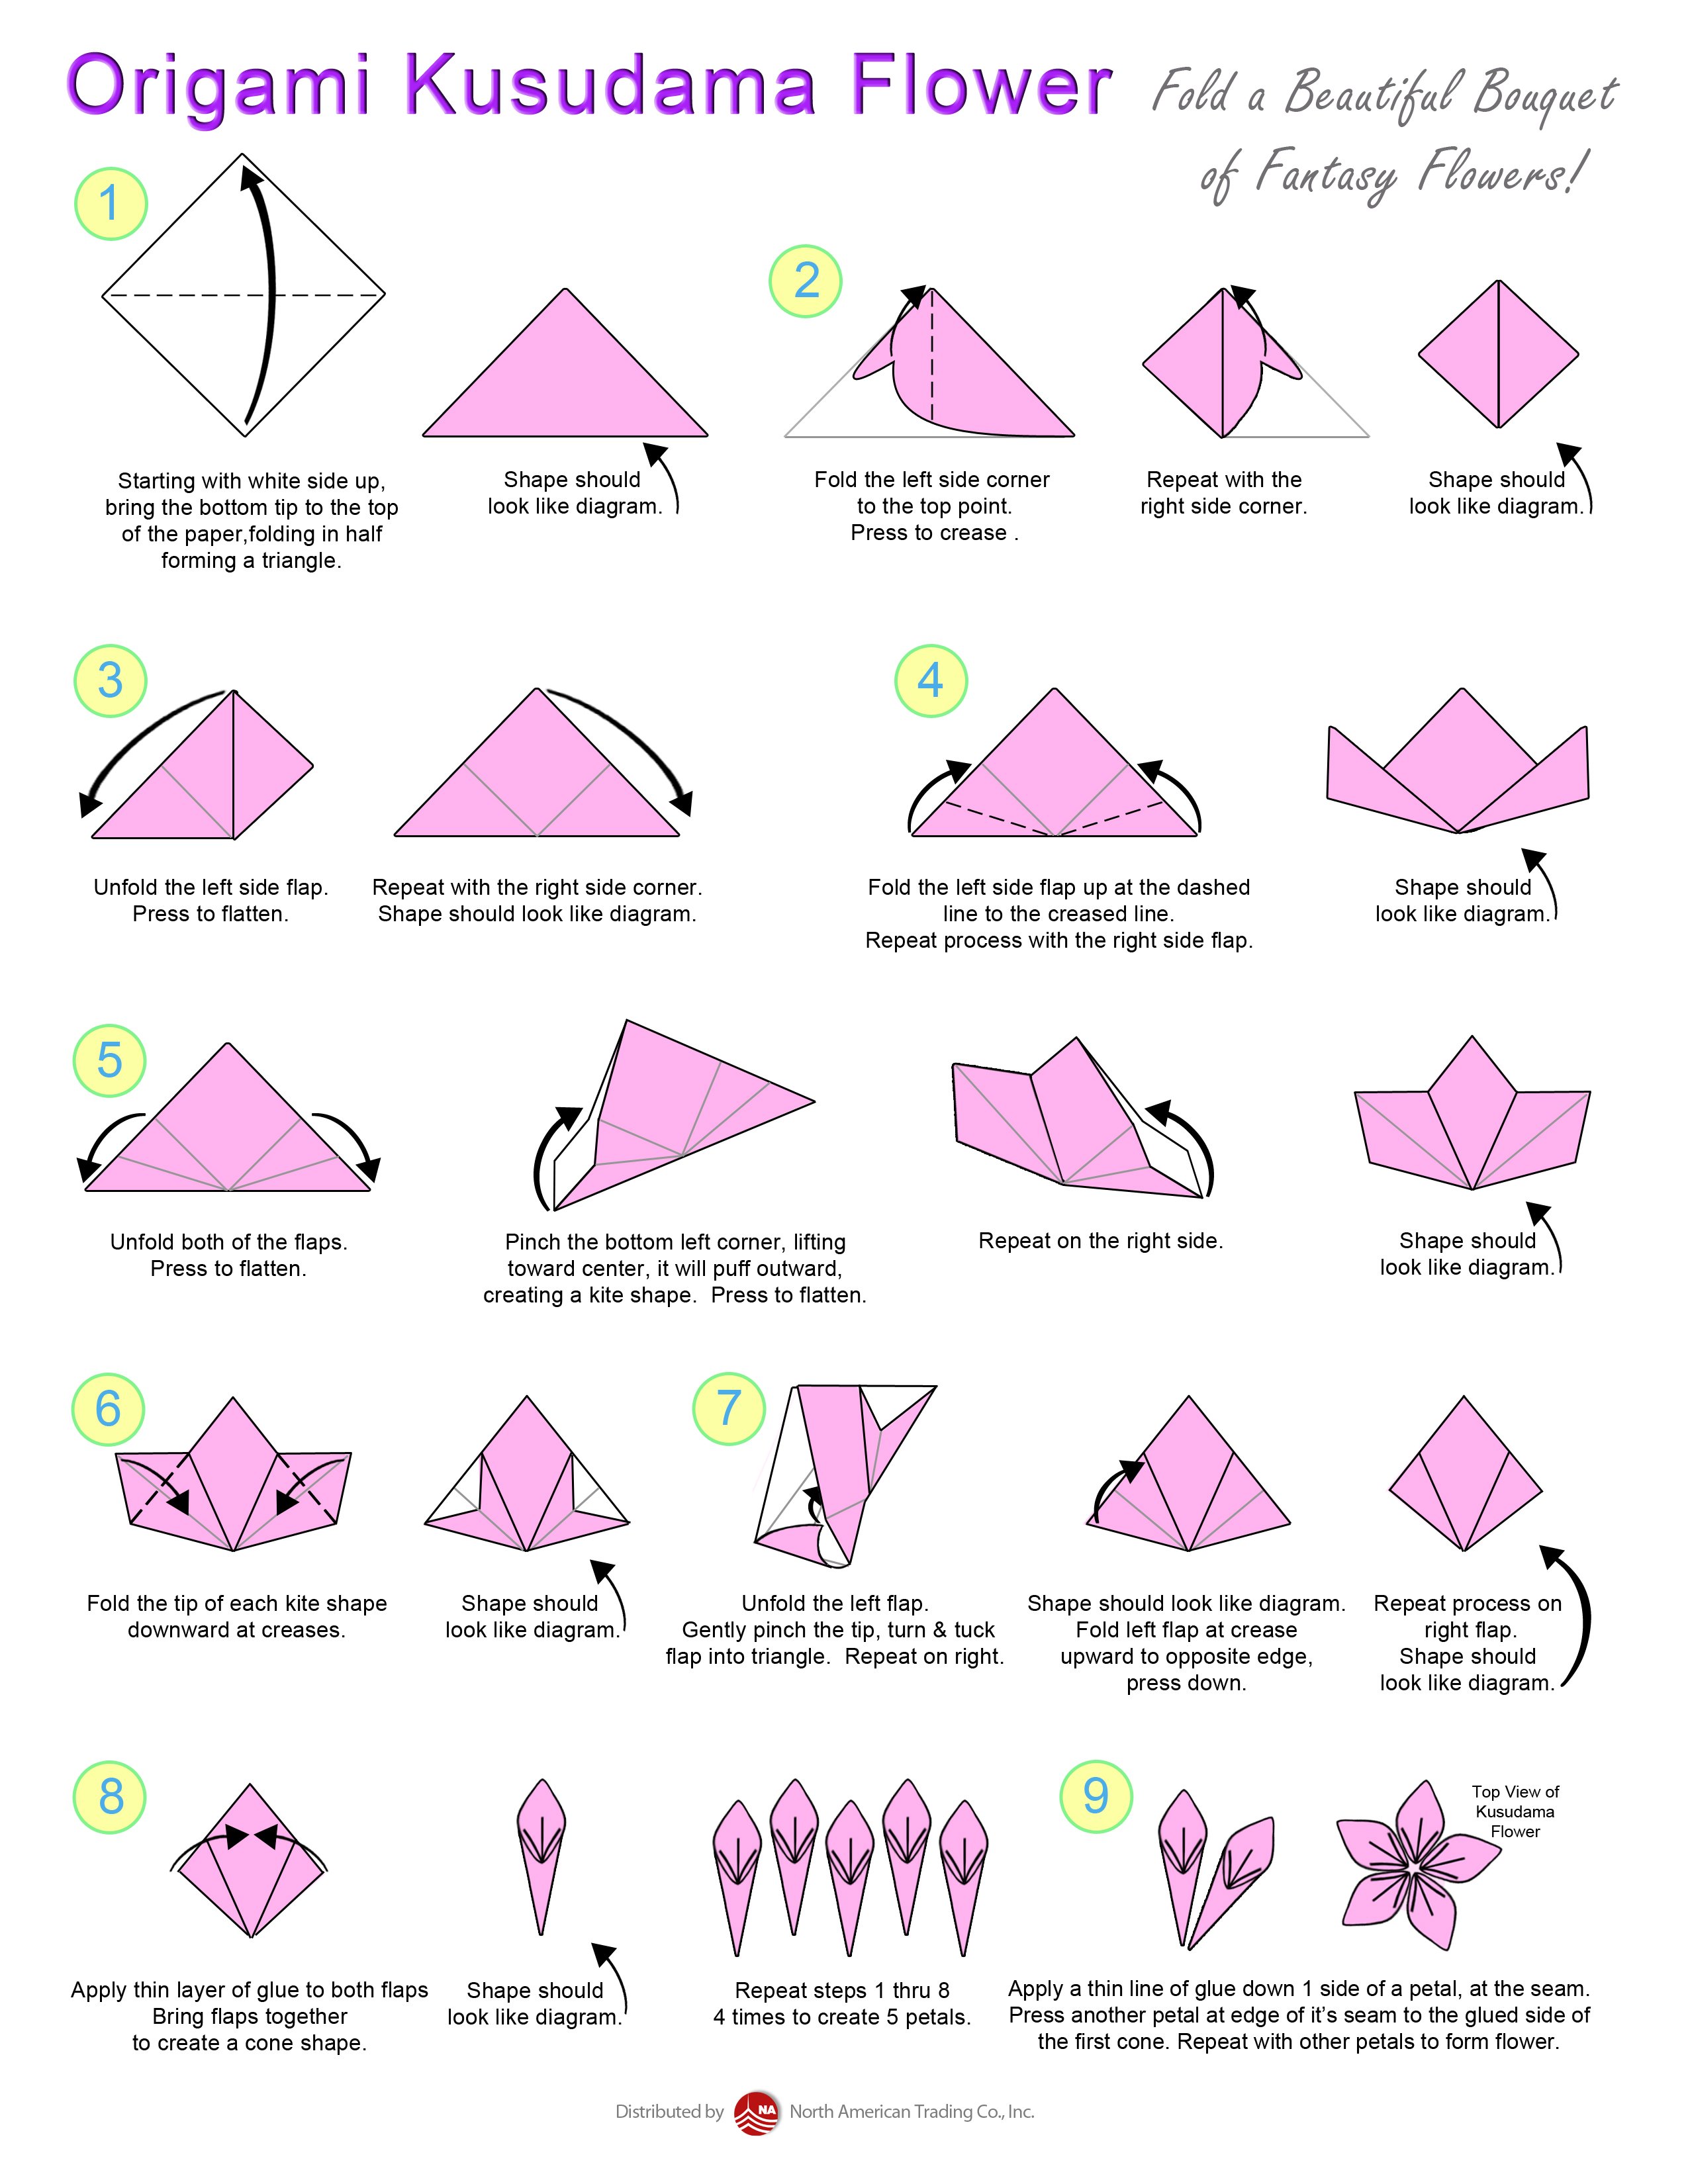 Цветок крокус оригами пошагово. Оригами цветов из бумаги пошаговой инструкции. Оригами Лилия схема сборки. Лилии оригами из бумаги пошаговой инструкции. Цветы из оригами схемы.